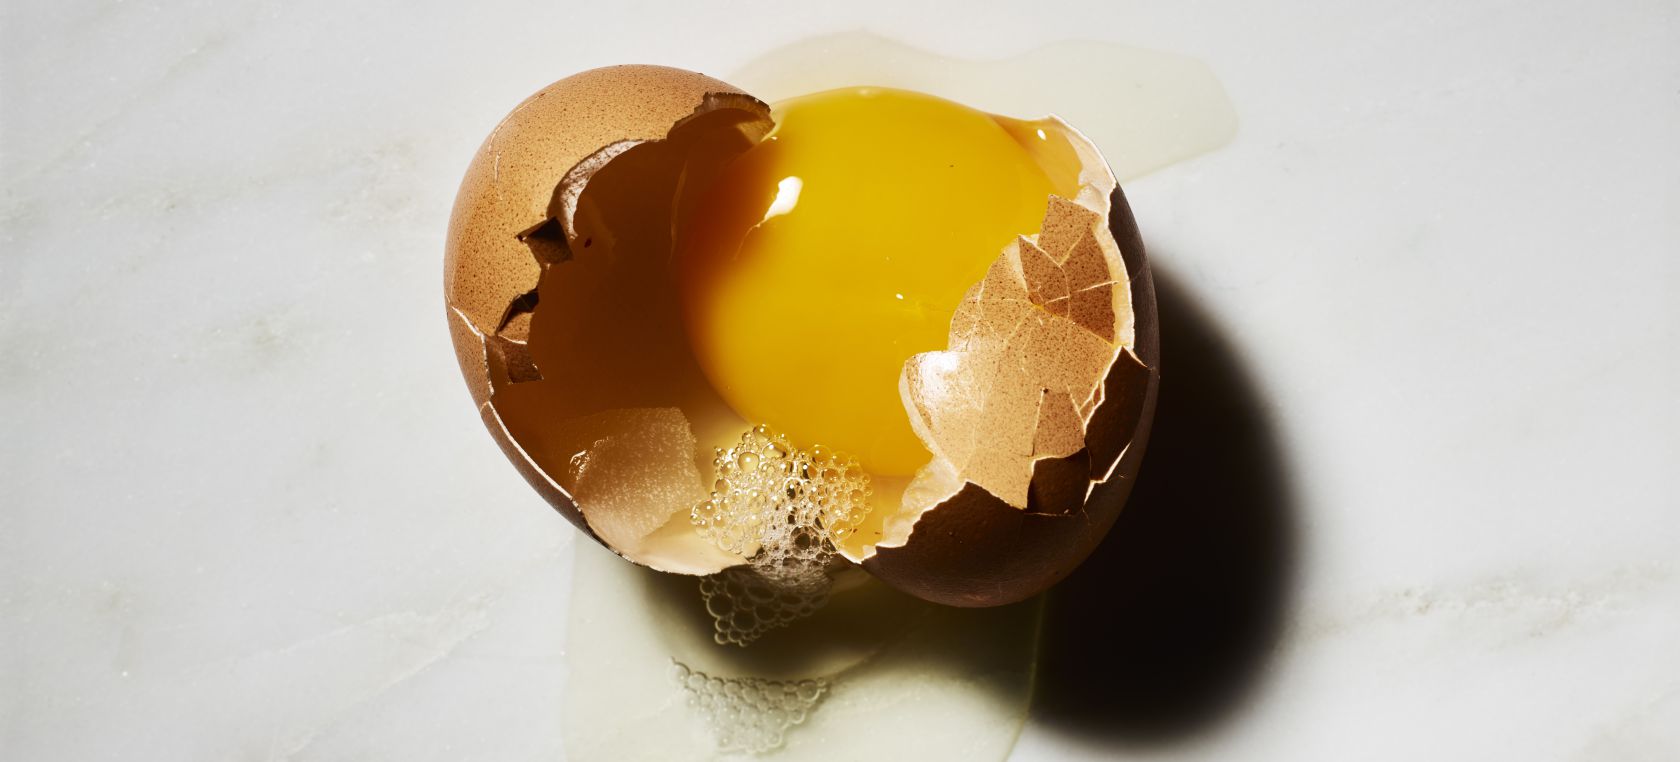 Alerta sanitaria: la AESAN advierte de la presencia de salmonella en huevo líquido vendido en España